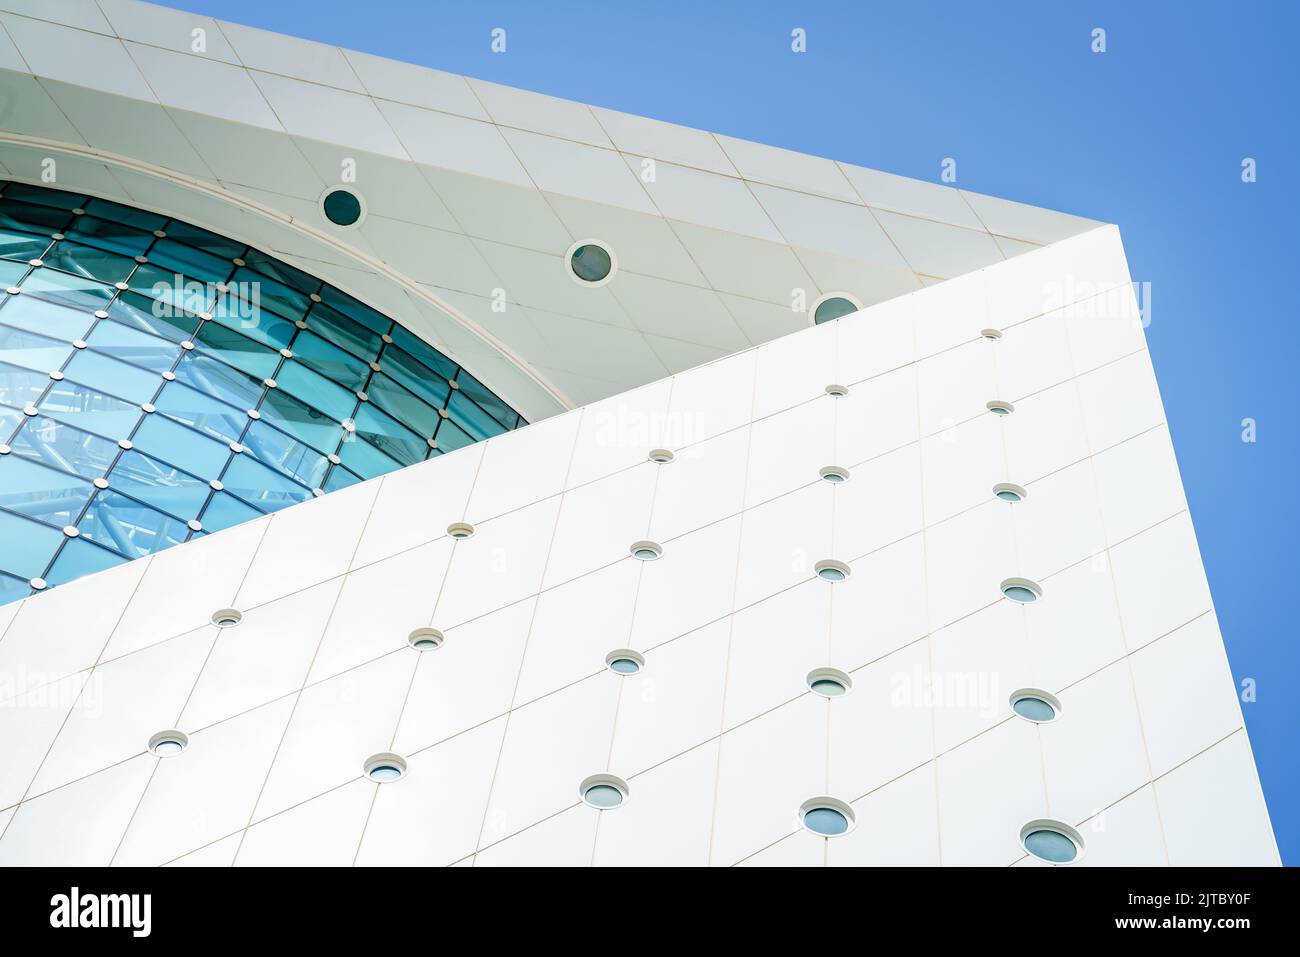 Detalles arquitectónicos de un edificio moderno con cielos azules en el fondo Foto de stock